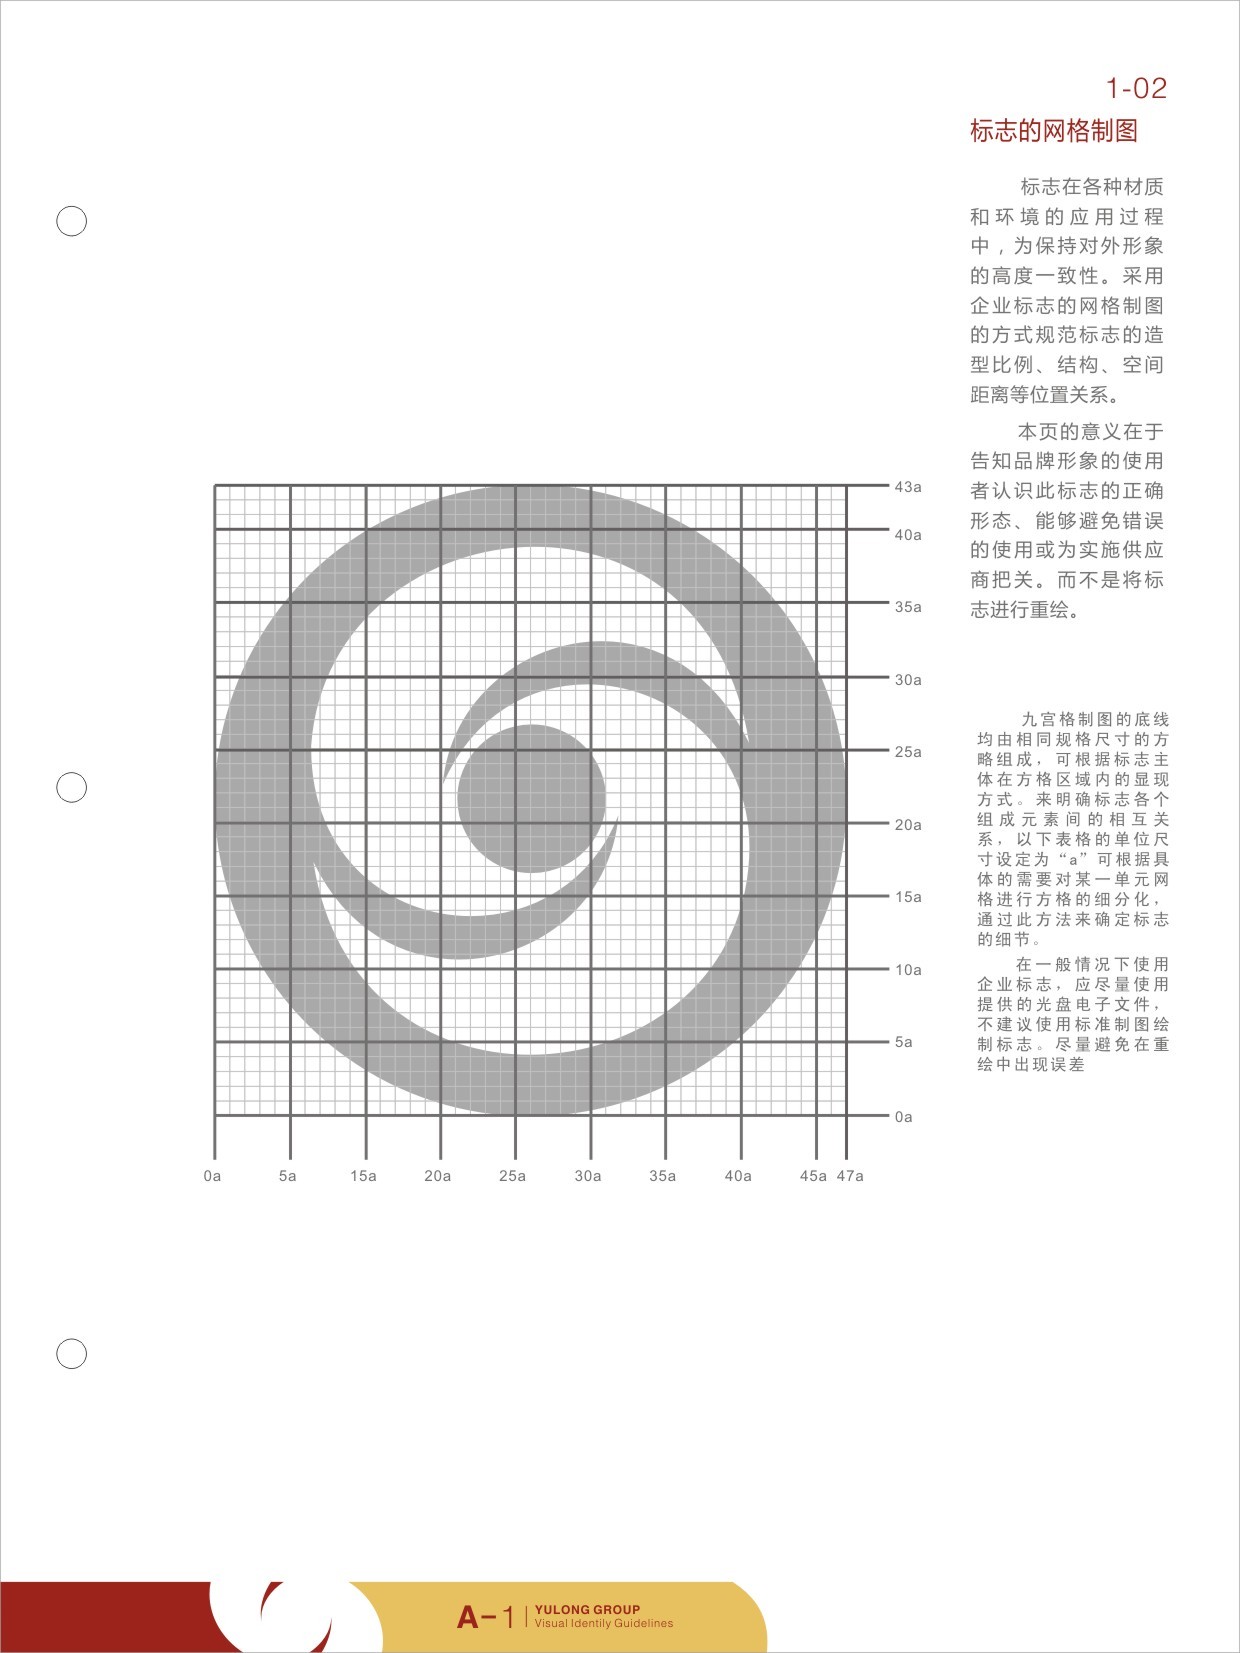 渝隆集团logo/VI视觉识别设计图2